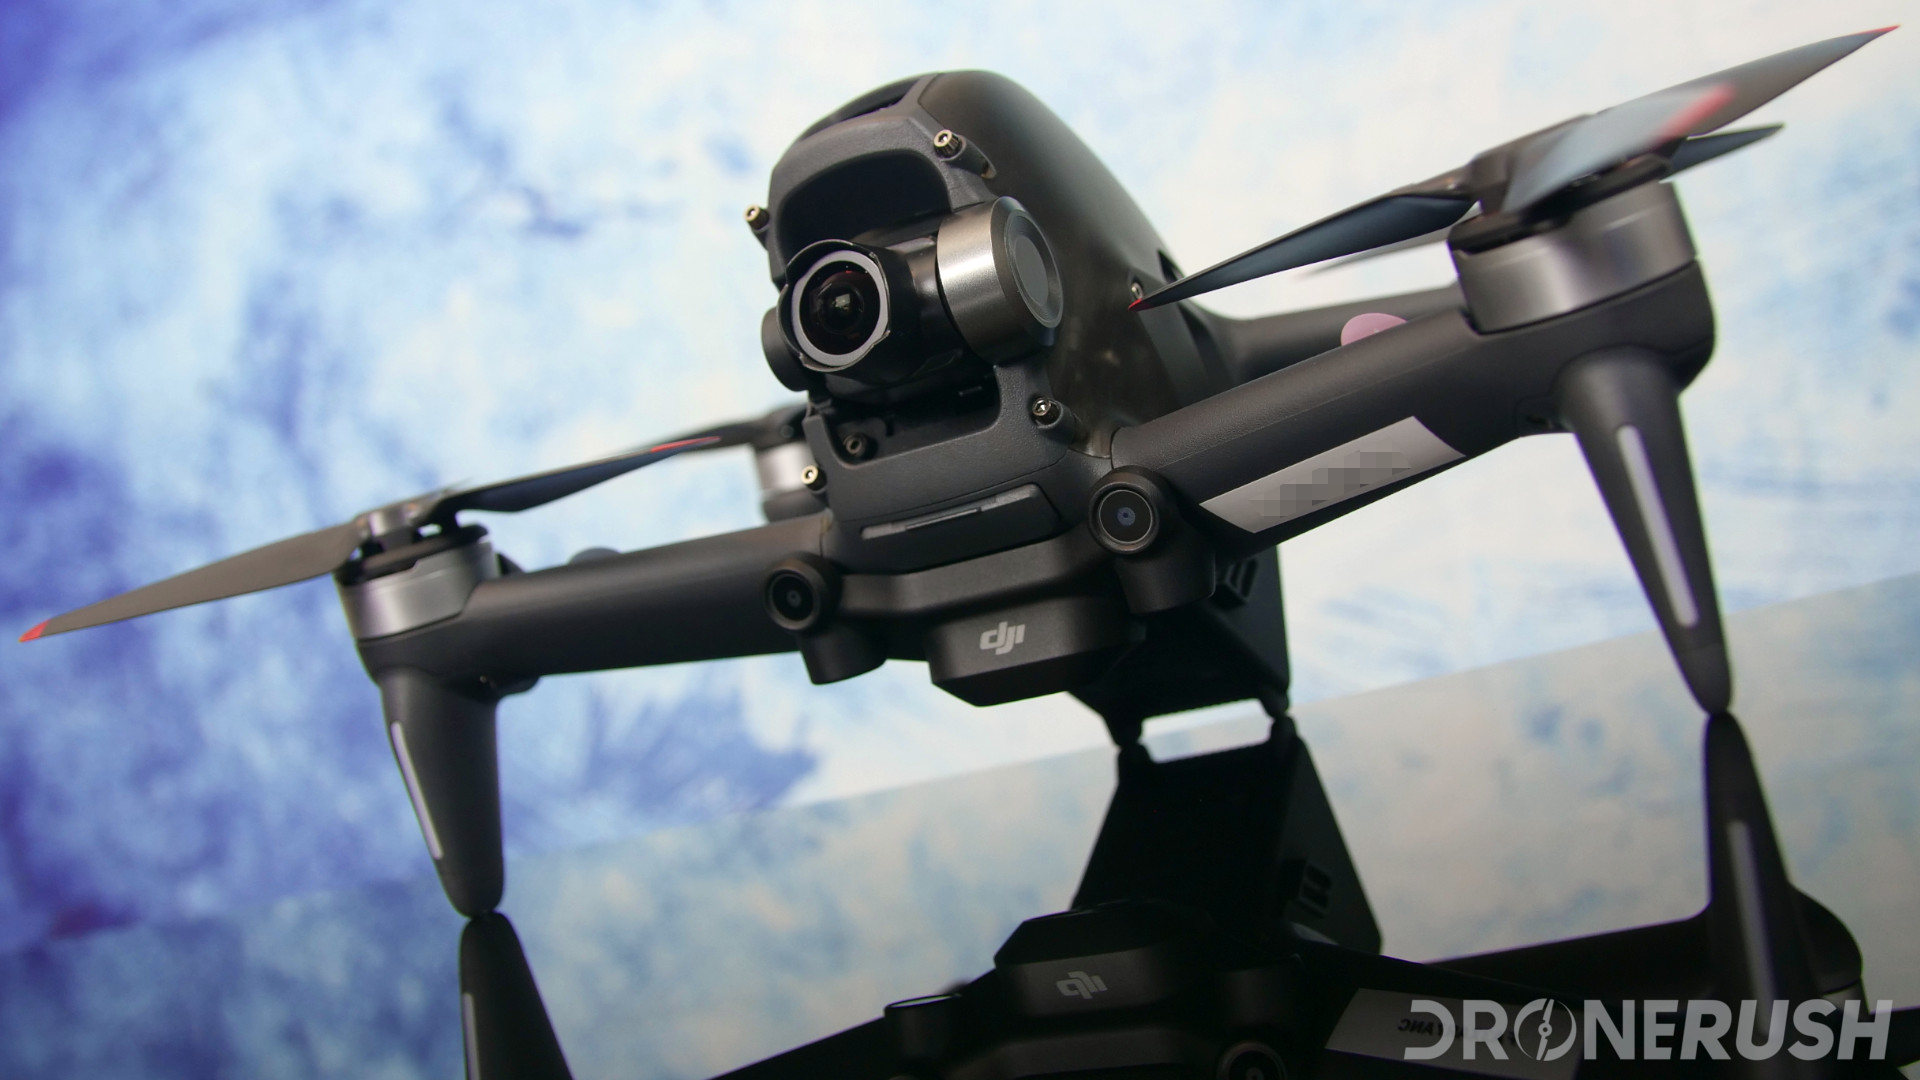 DJI FPV Drone Review